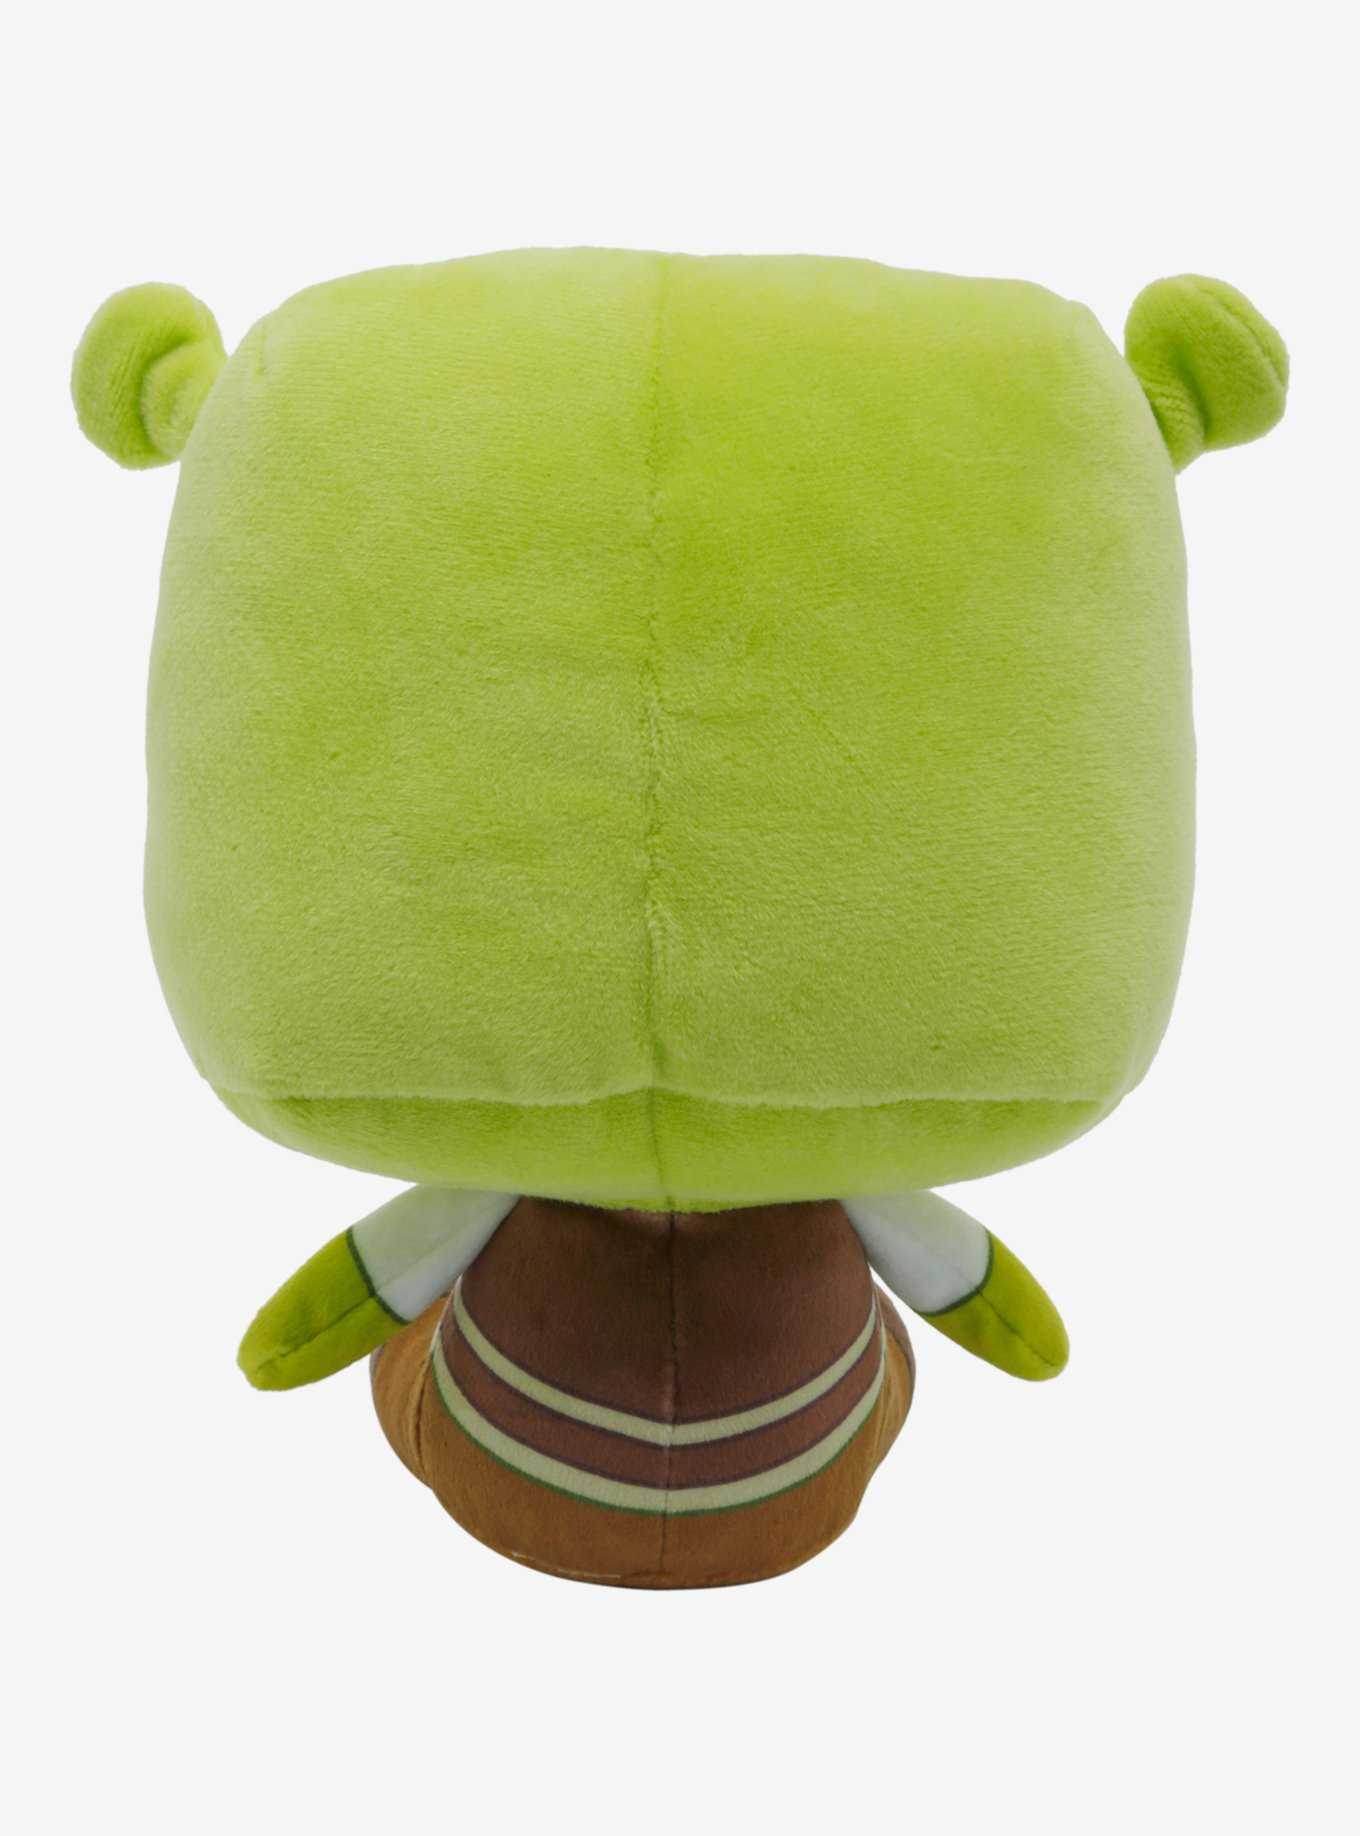 Funko Shrek Plush, , hi-res